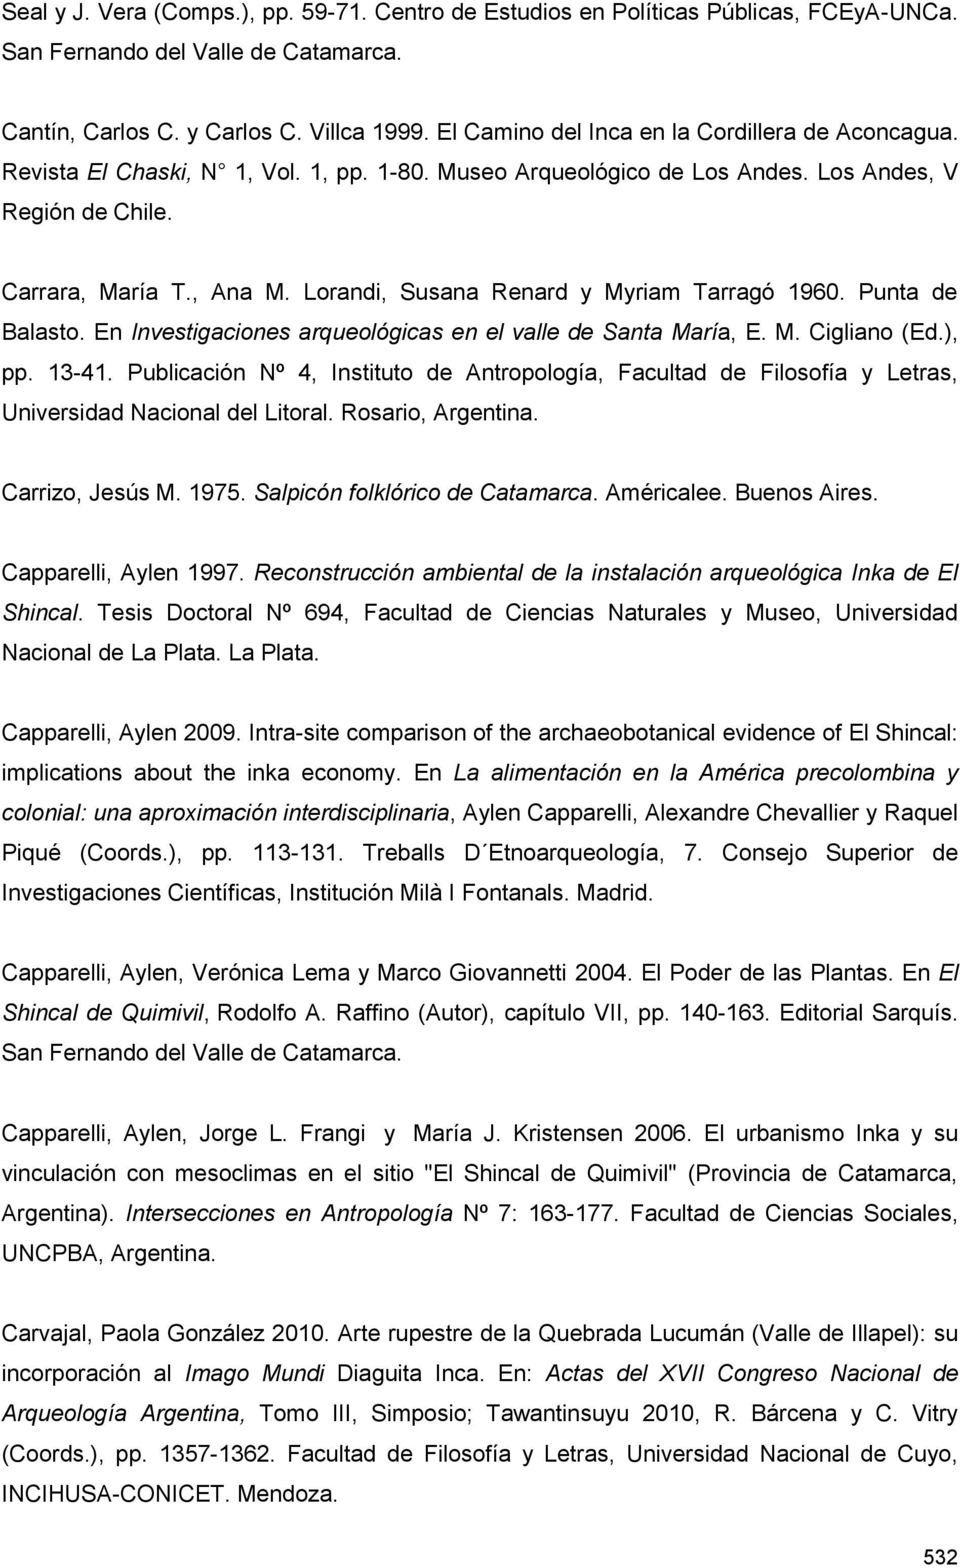 Lorandi, Susana Renard y Myriam Tarragó 1960. Punta de Balasto. En Investigaciones arqueológicas en el valle de Santa María, E. M. Cigliano (Ed.), pp. 13-41.